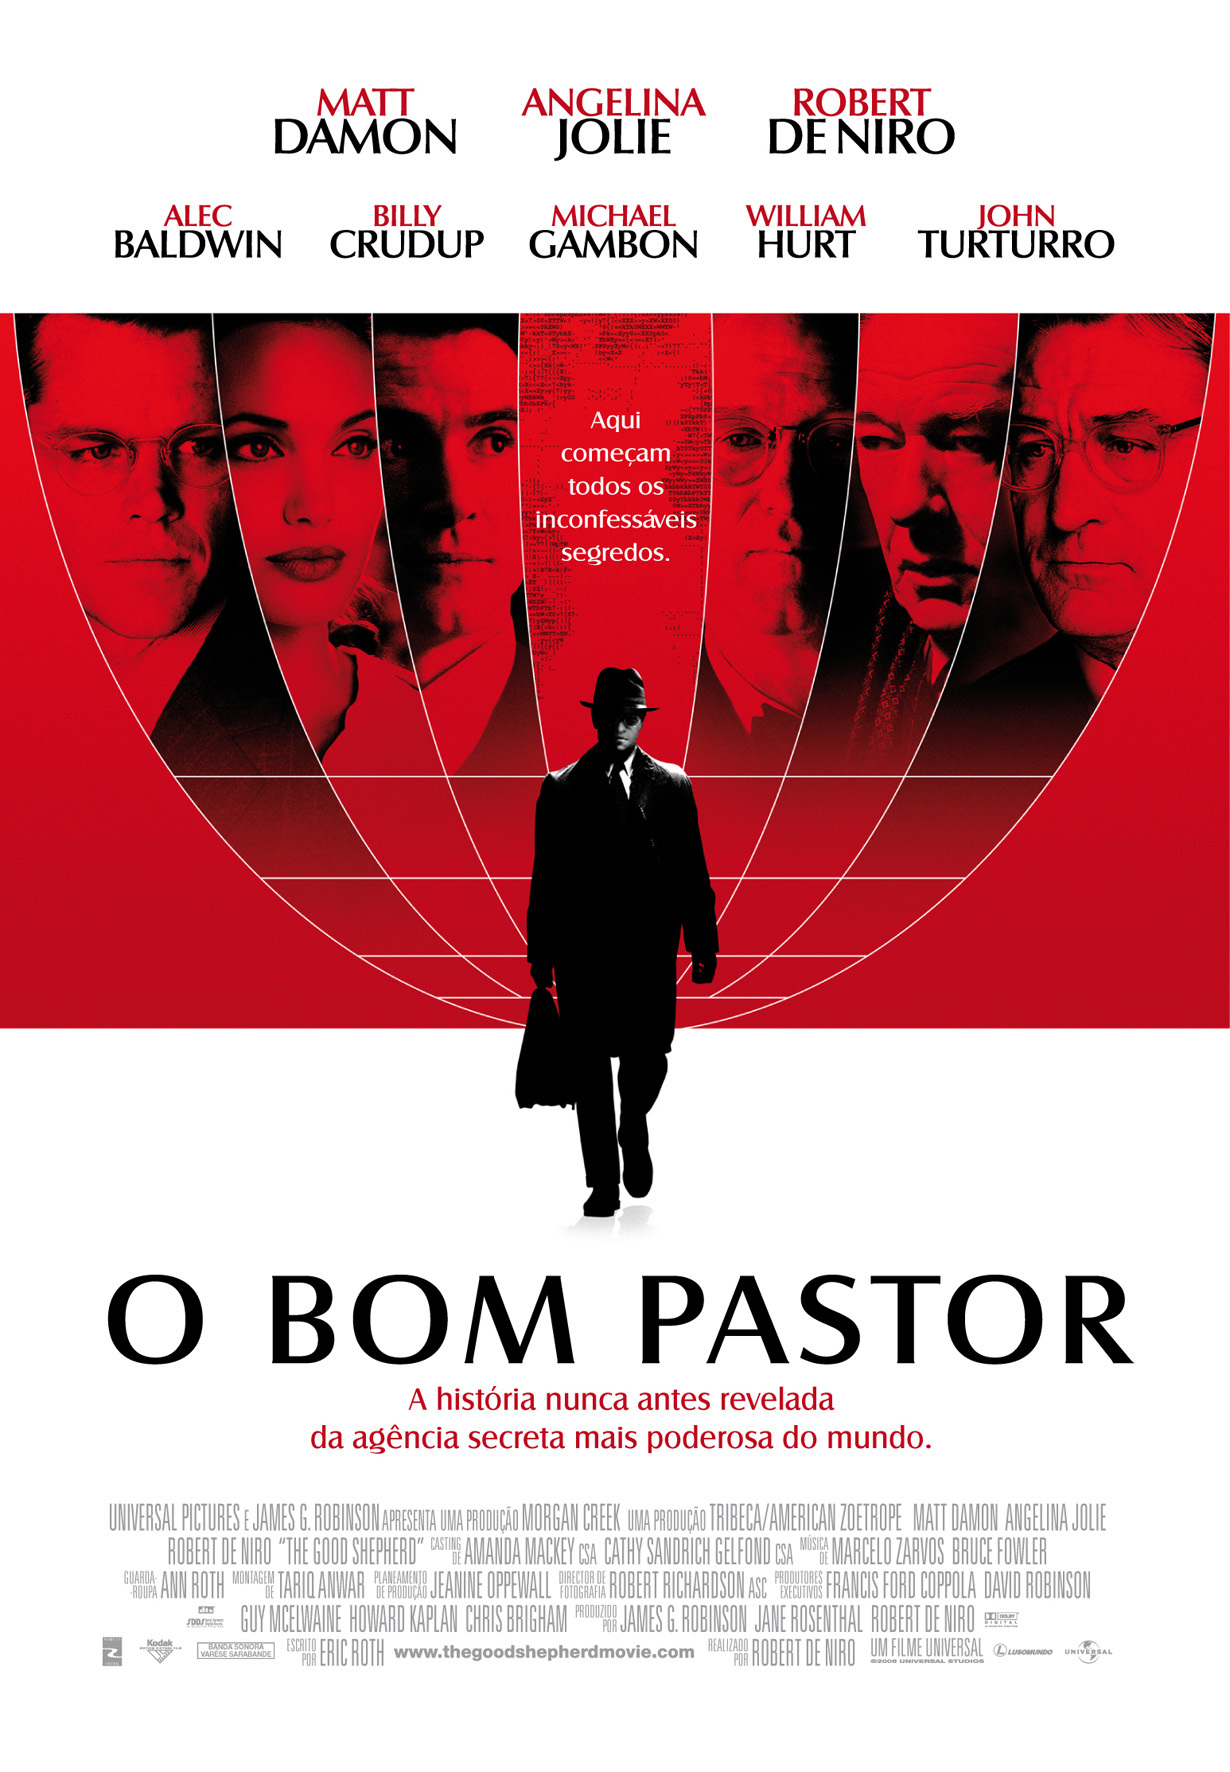 O Bom Pastor - SAPO Mag